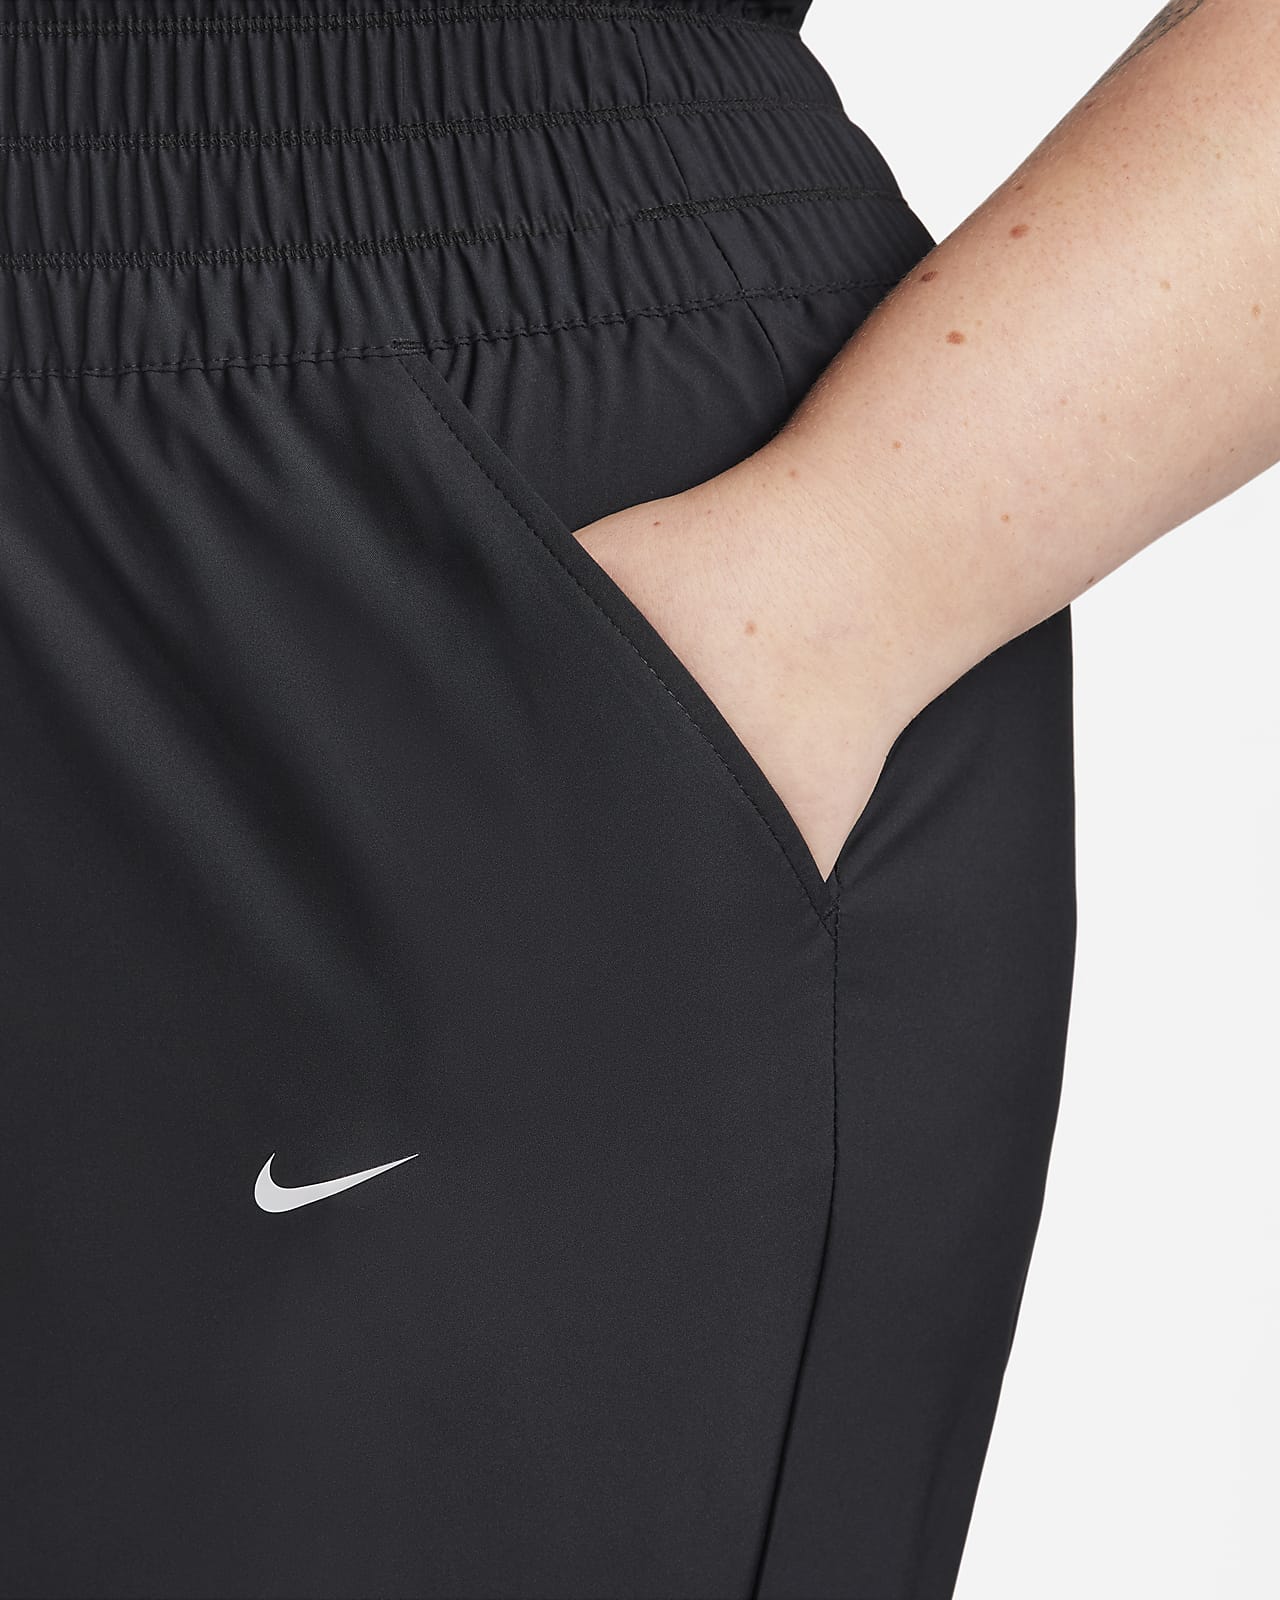 Nike Dri-FIT One Women's Ultra High-Waisted Trousers. Nike ID